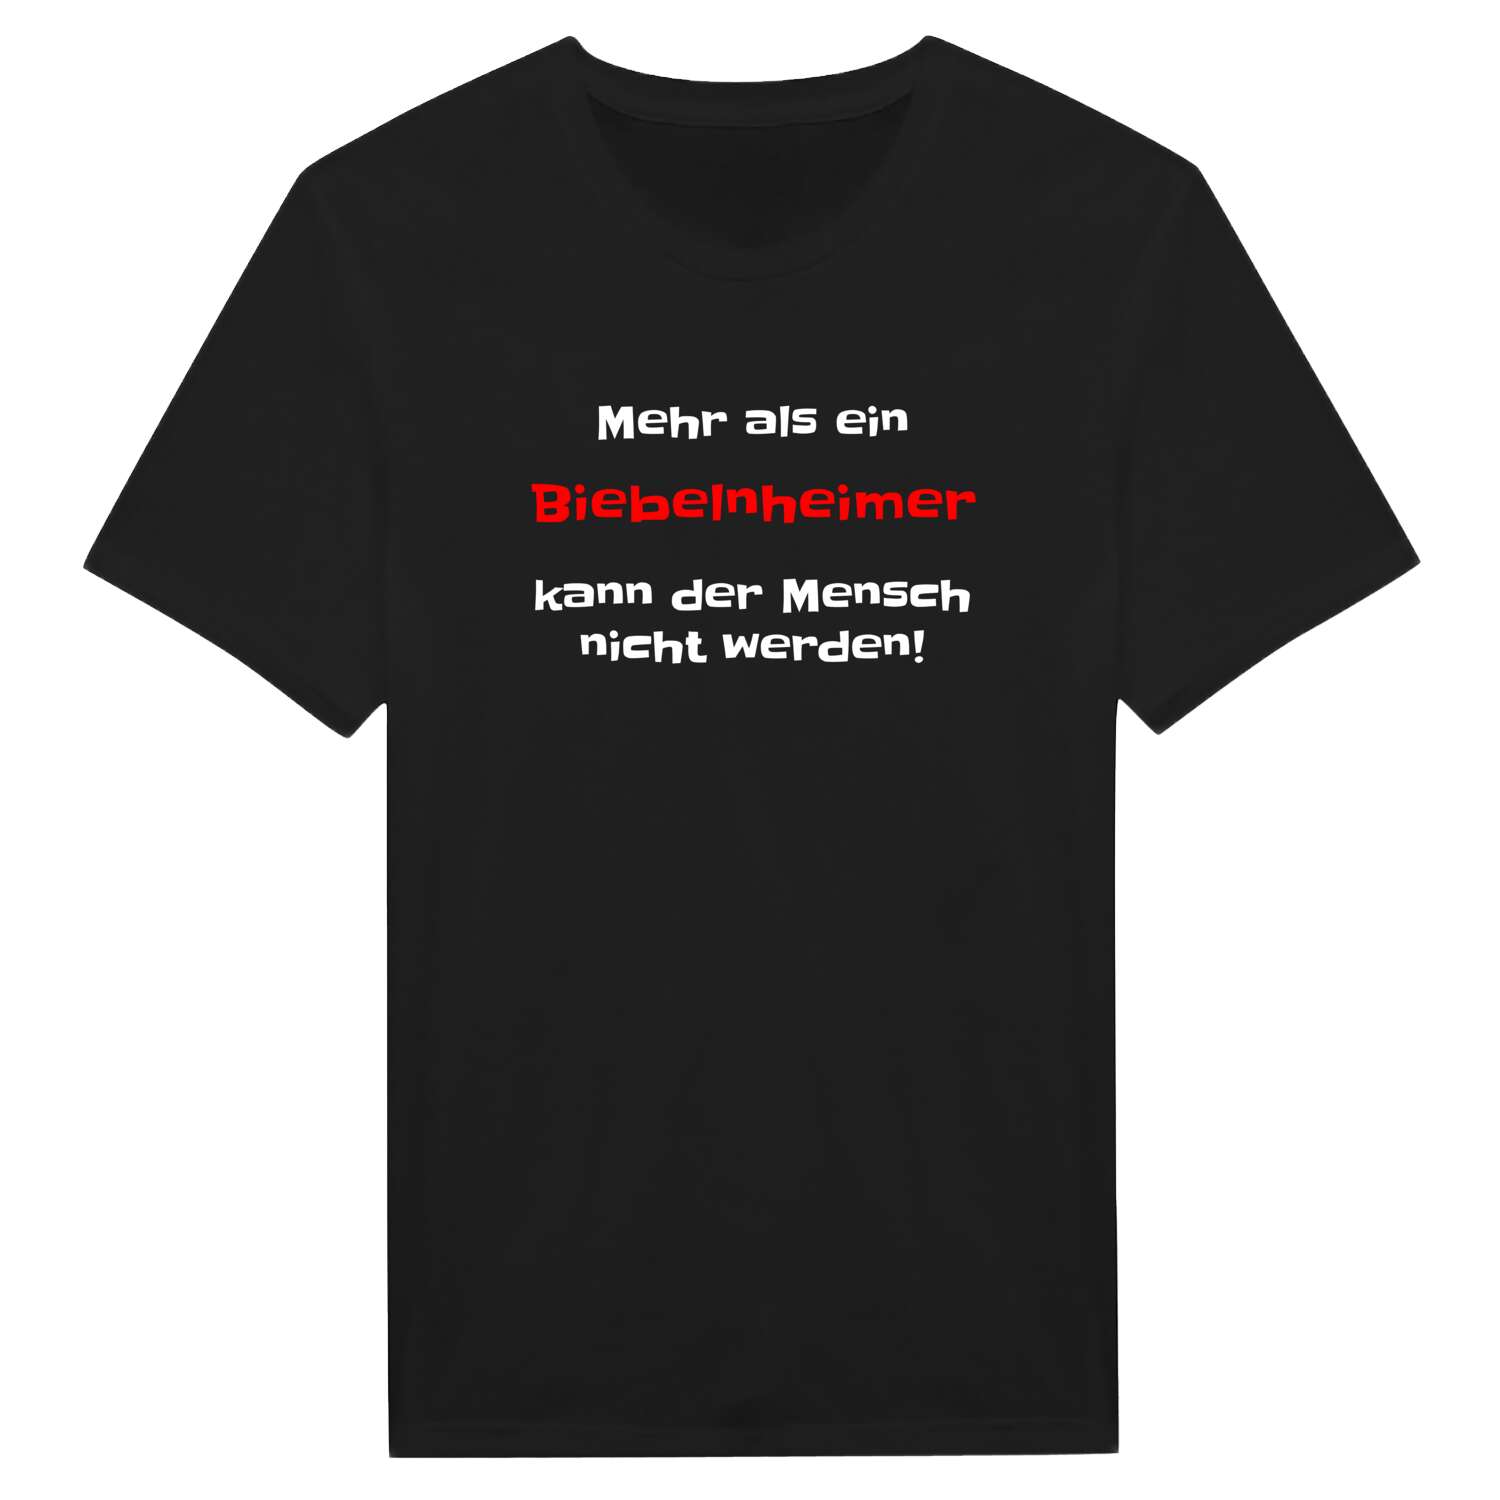 Biebelnheim T-Shirt »Mehr als ein«